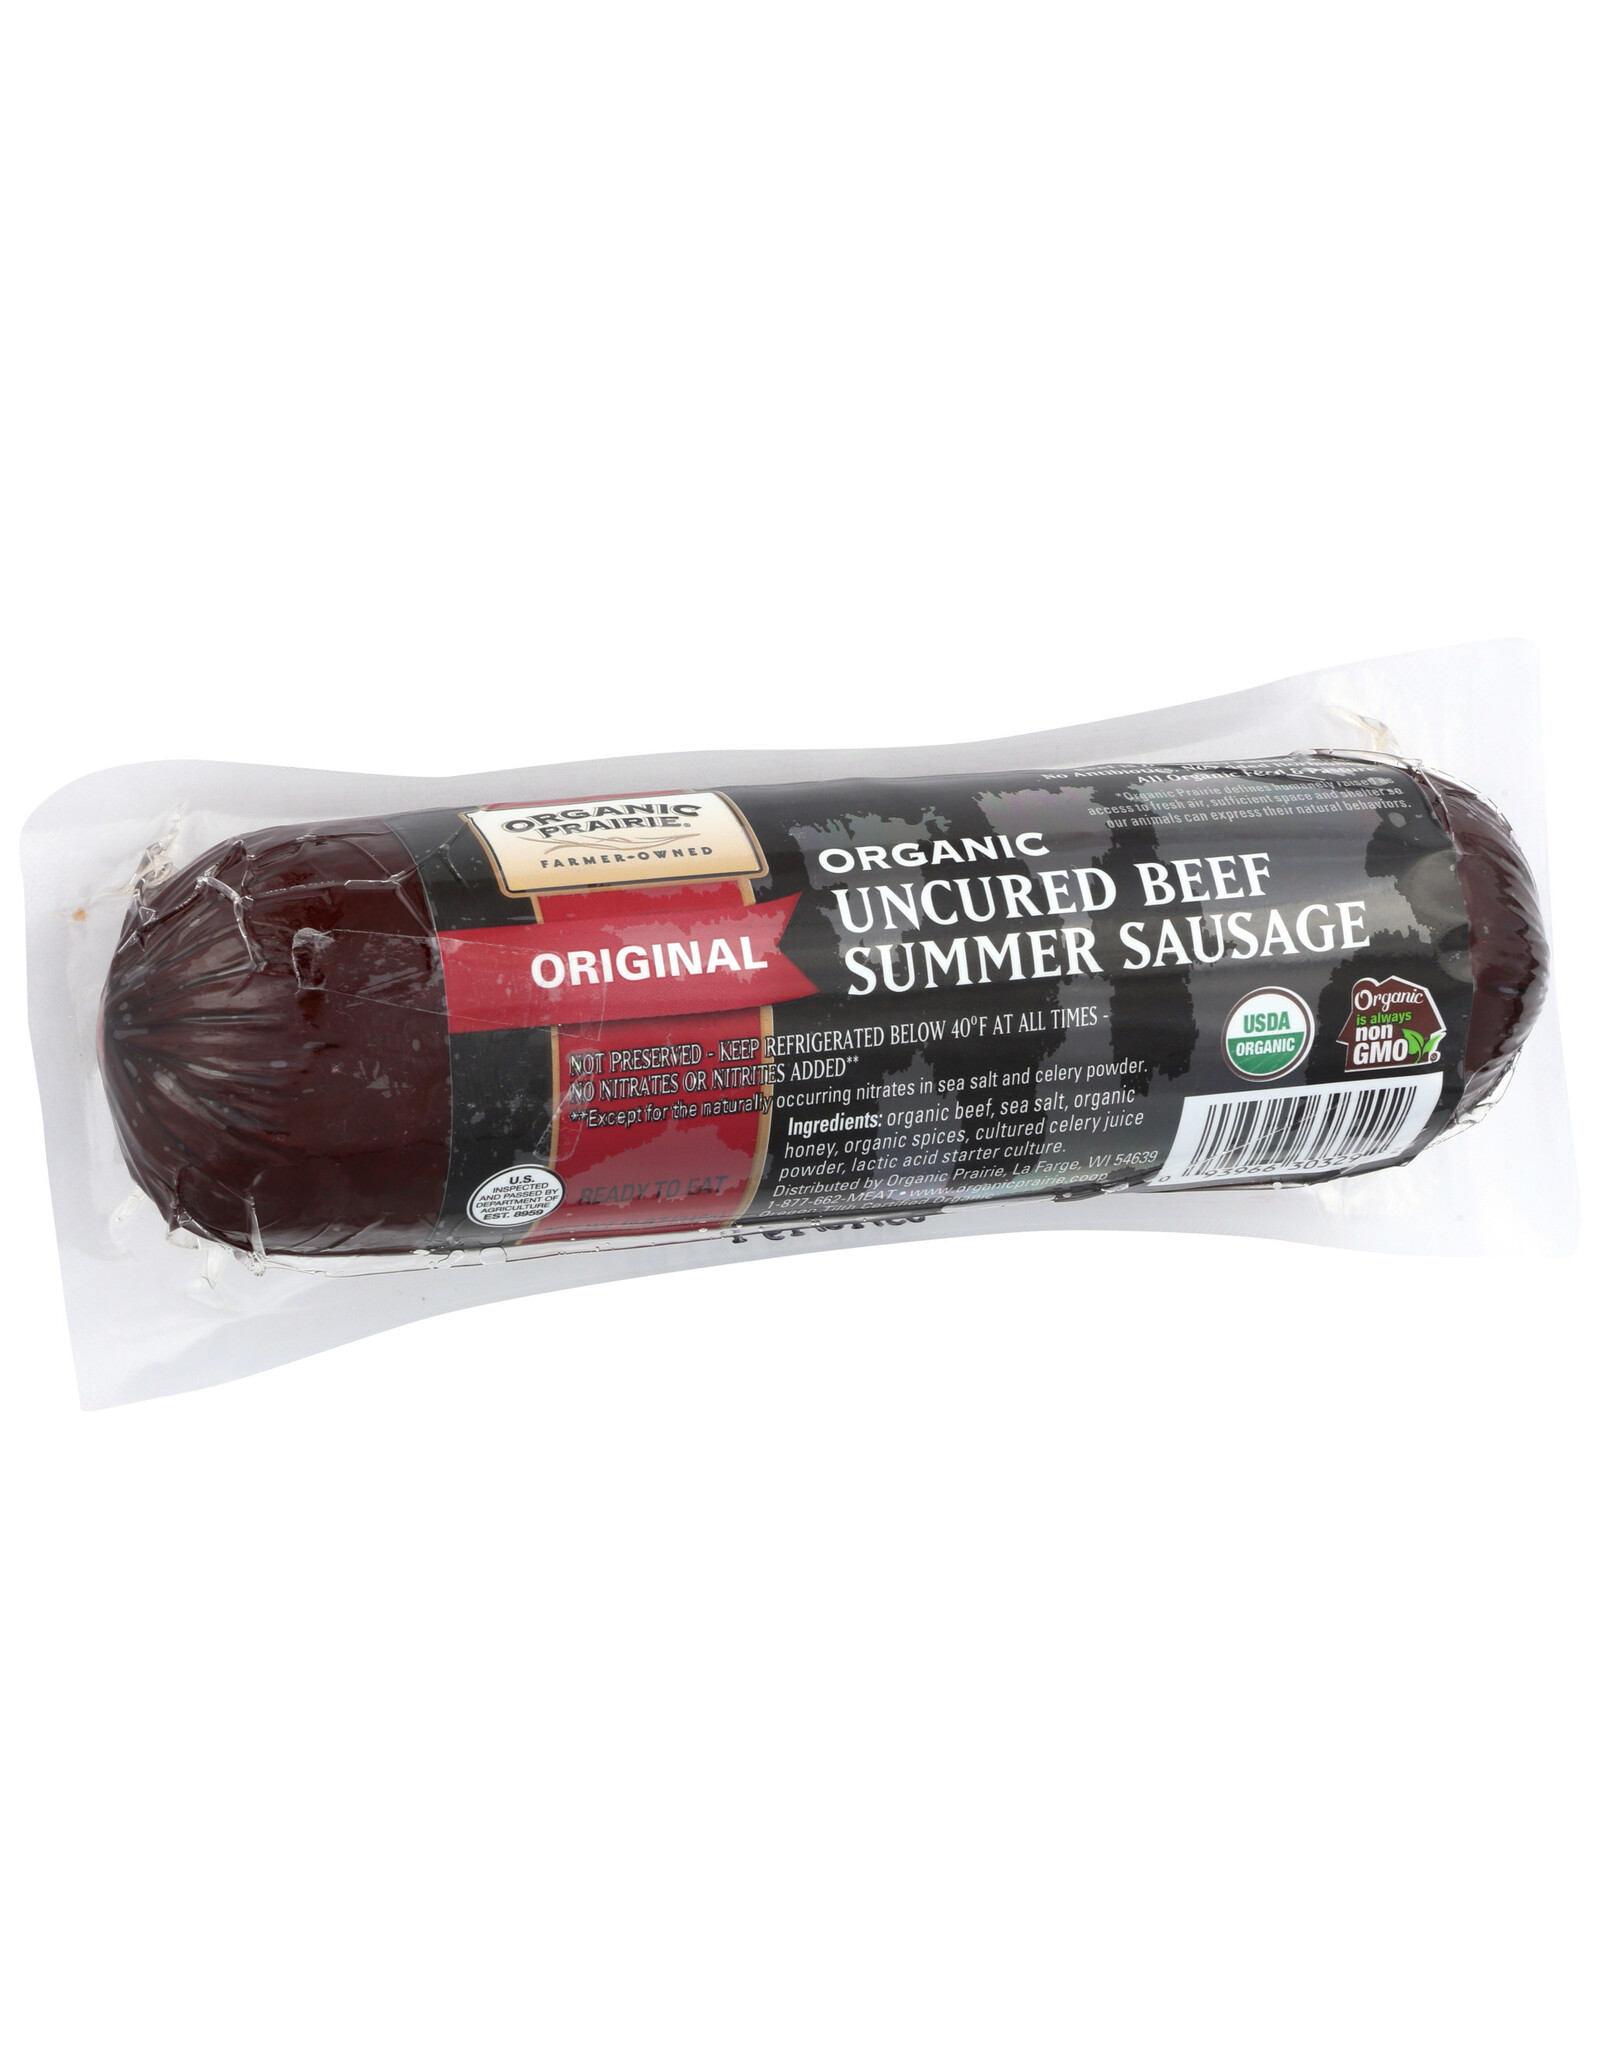 https://cdn.shoplightspeed.com/shops/627390/files/30158275/1600x2048x2/summer-sausage-og2-beef-12-oz.jpg